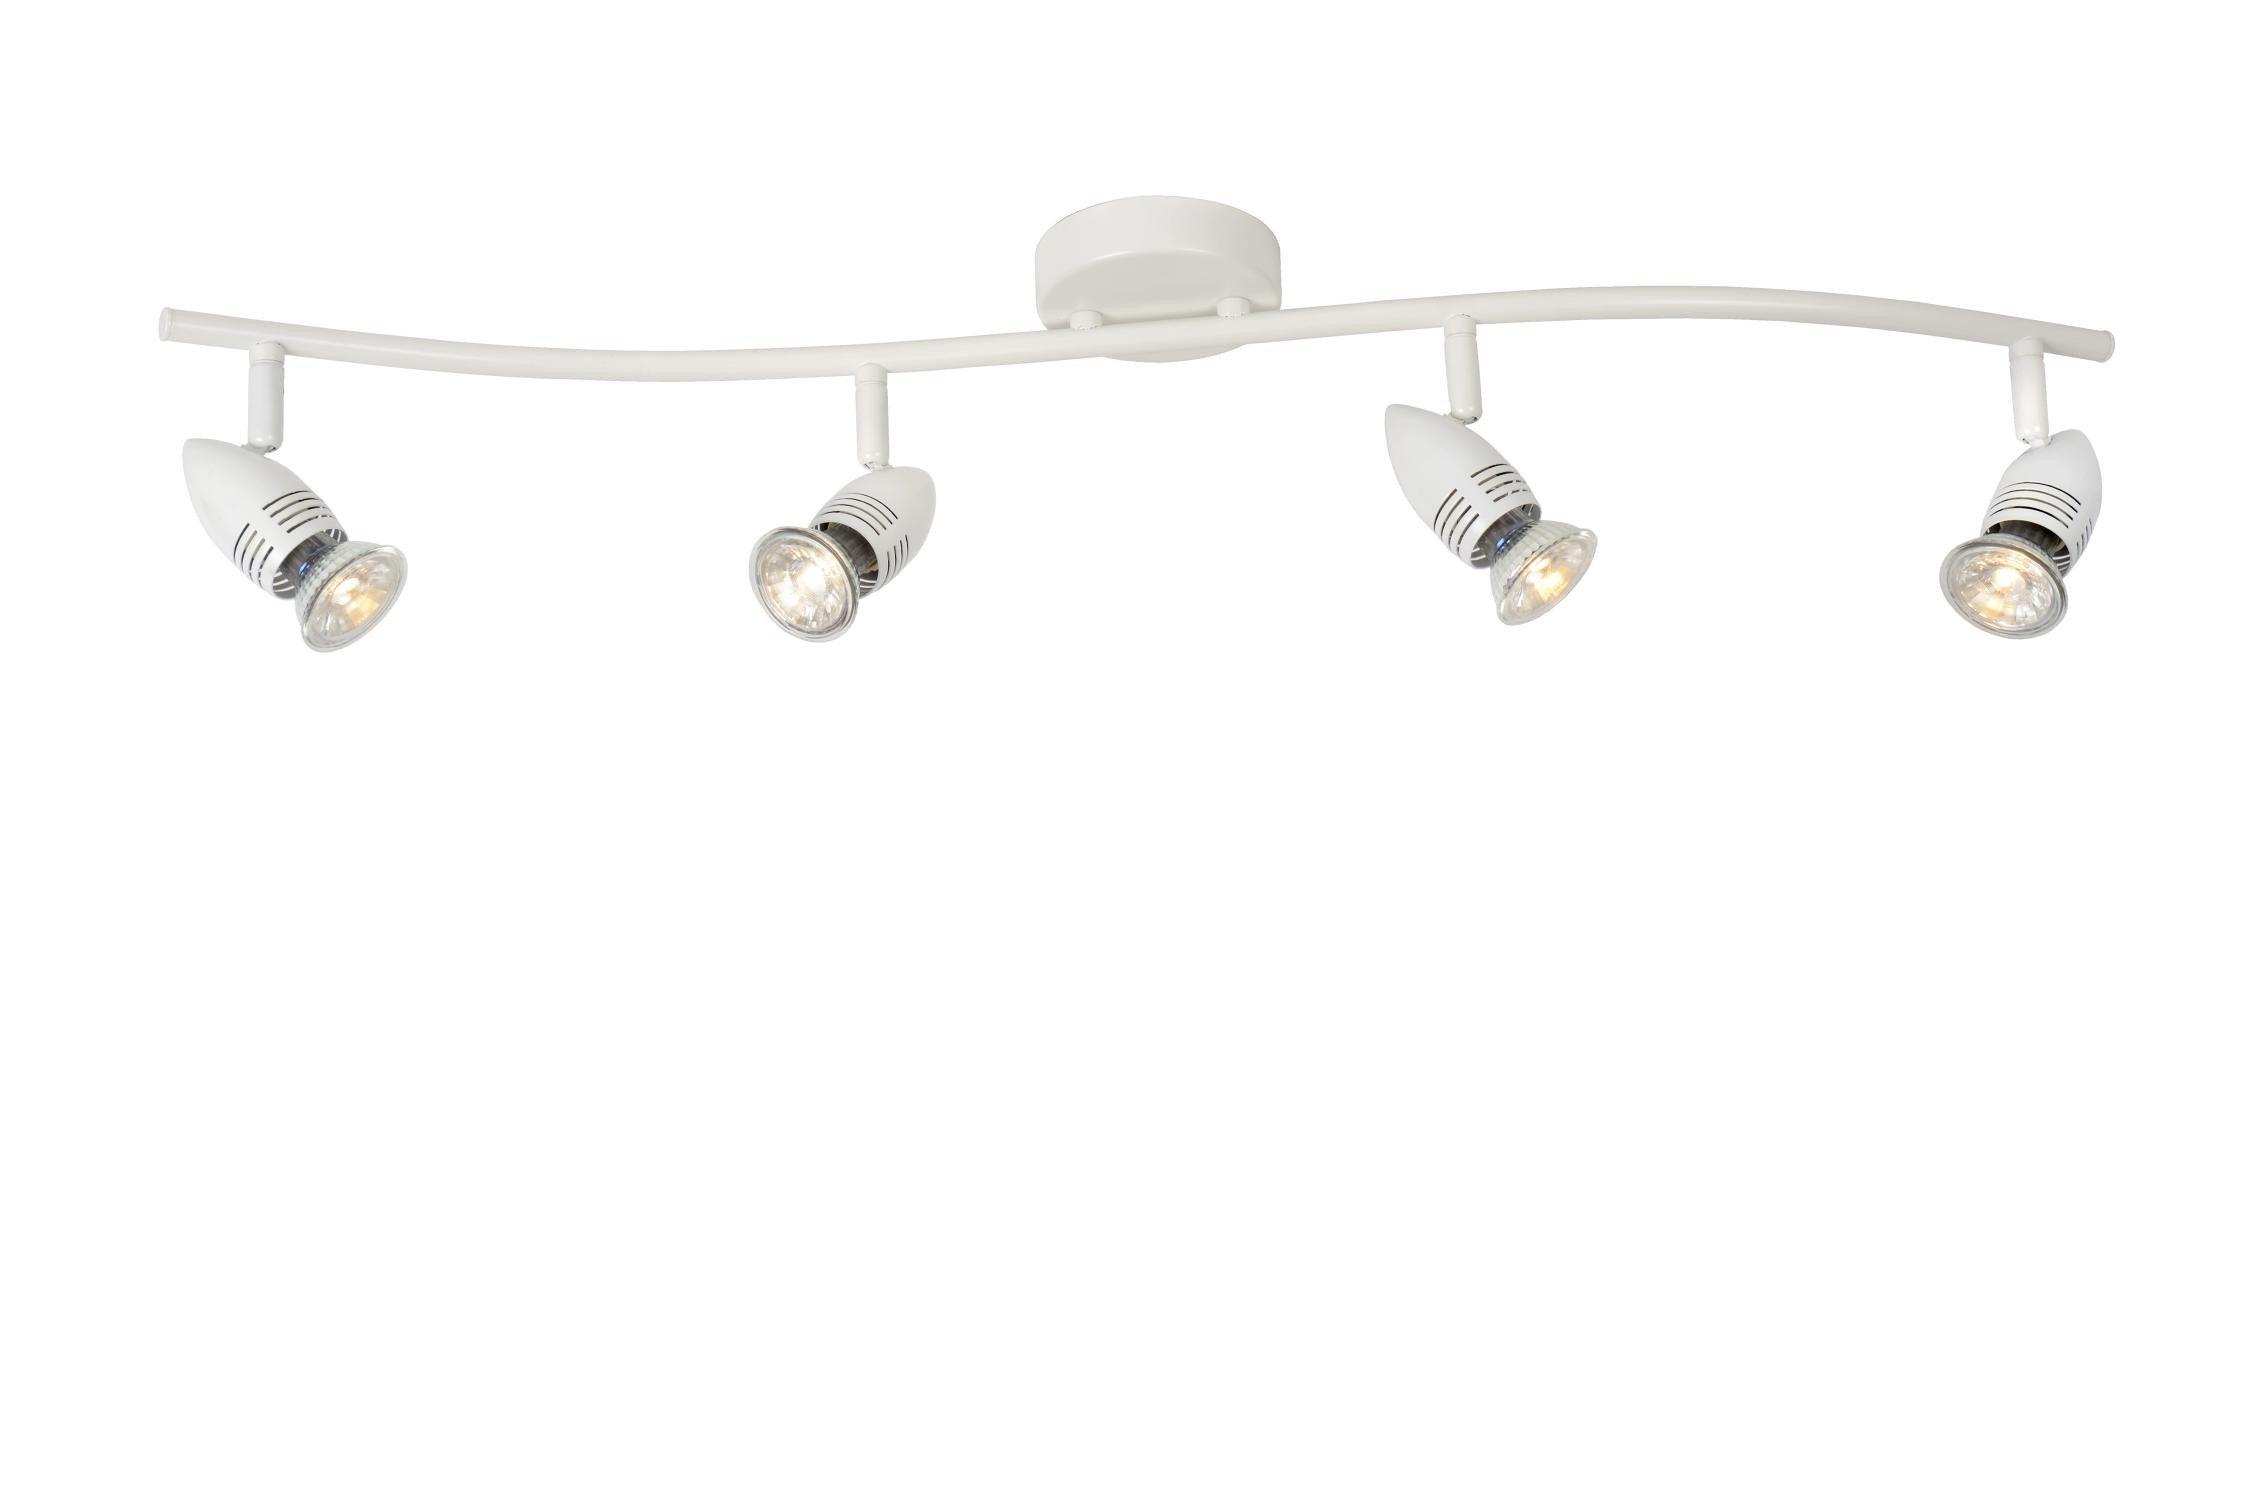 Lucide CaroLed Modern Ceiling Spotlight Bar LED GU10 4x5W 2700K White